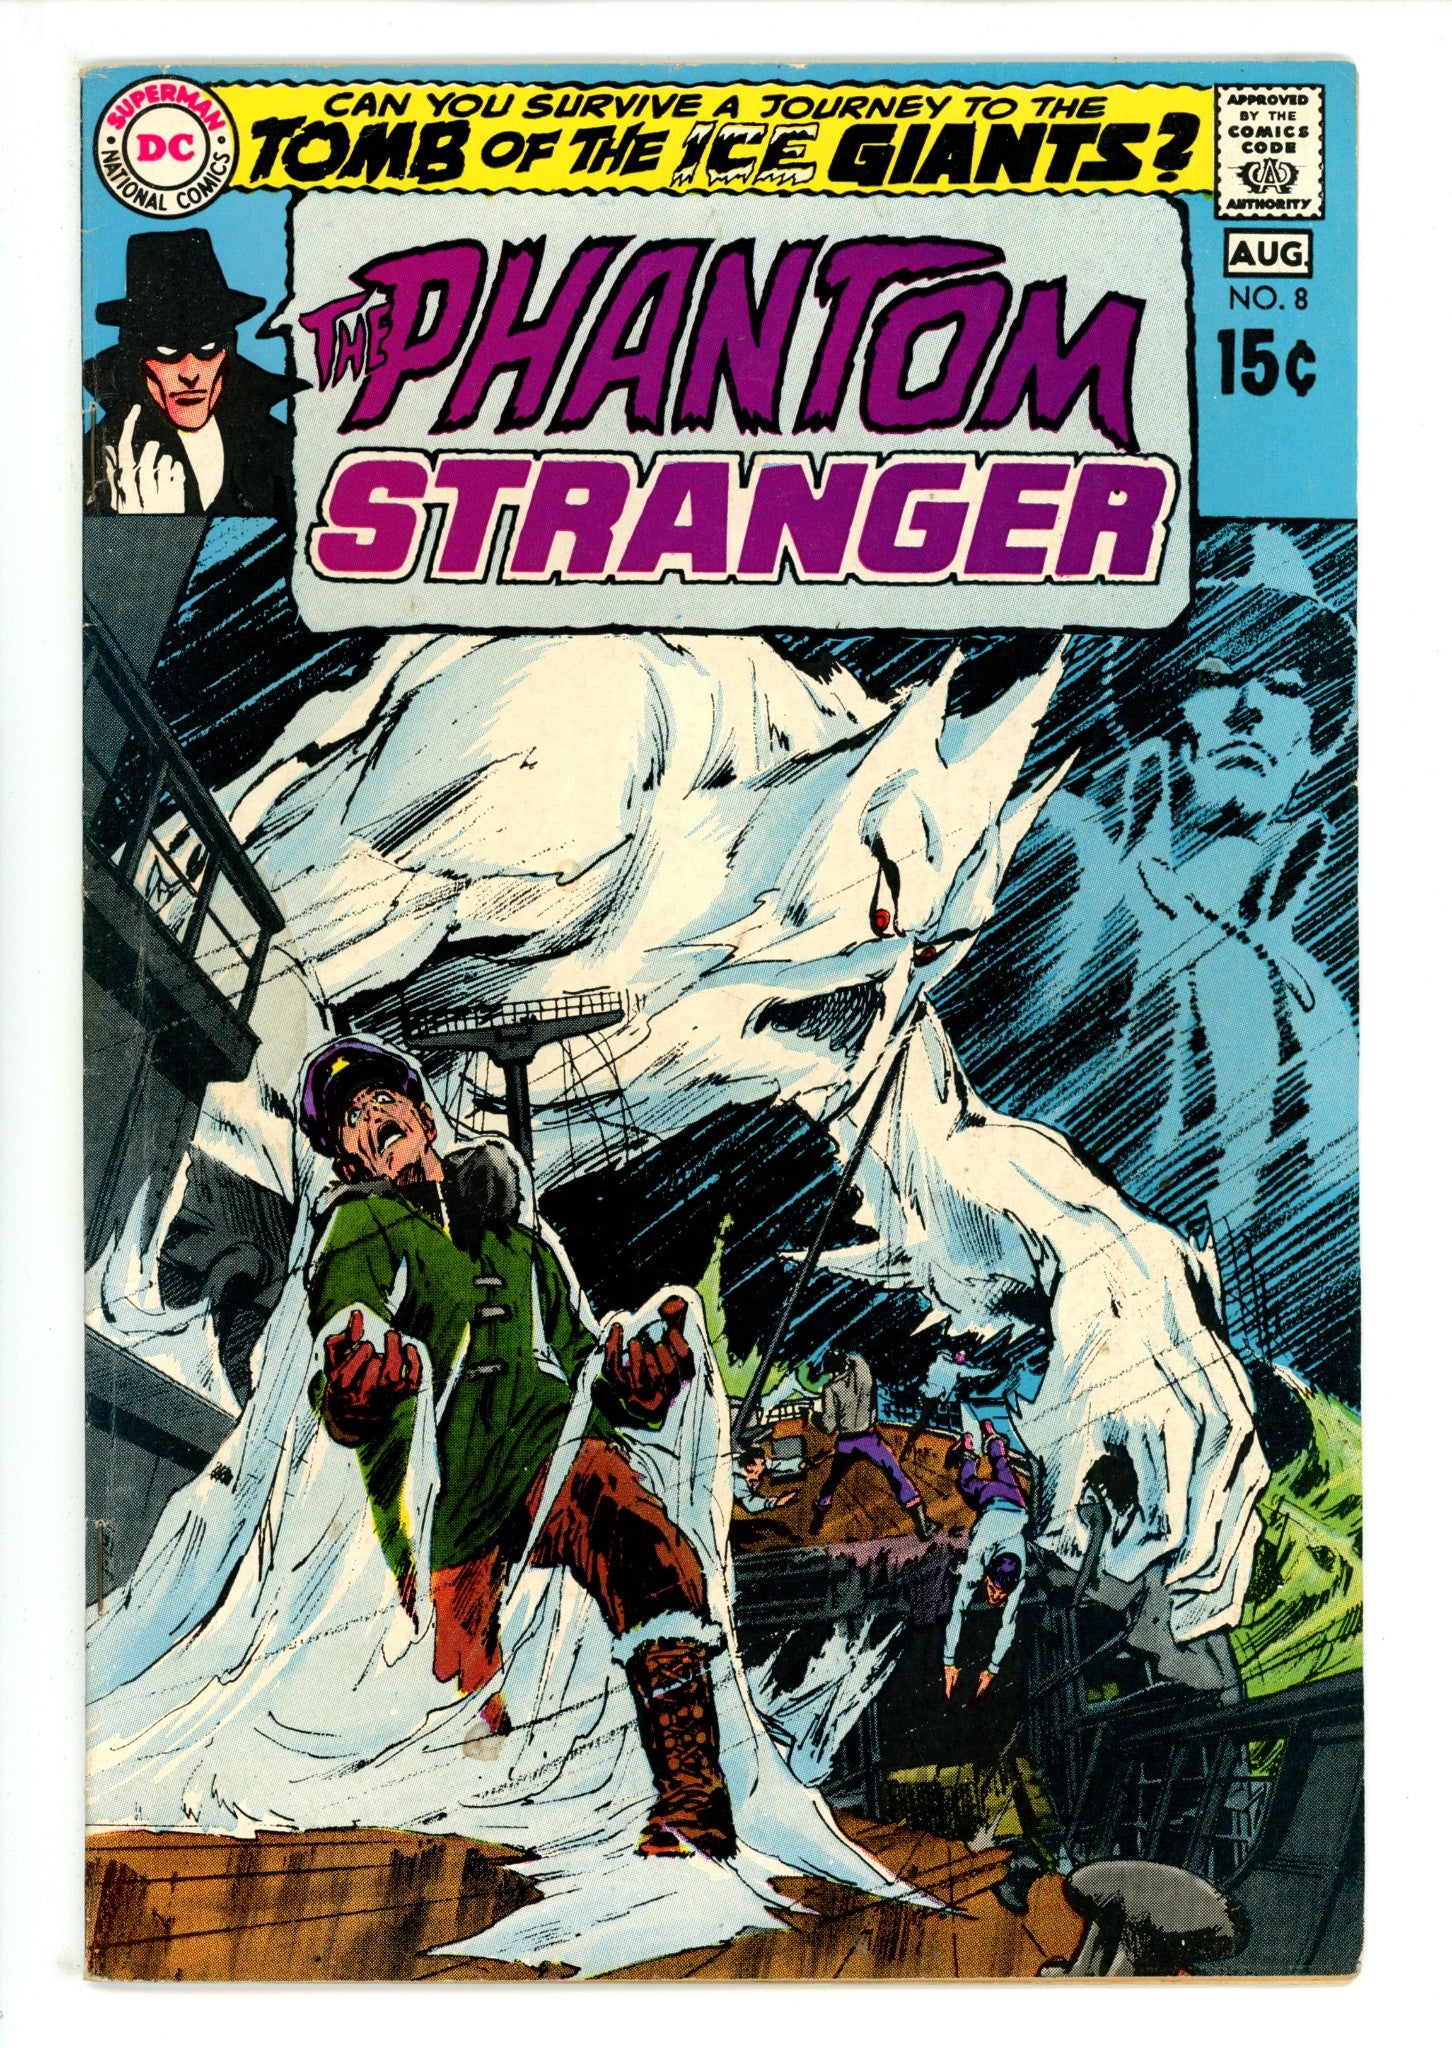 The Phantom Stranger Vol 2 8 VG/FN (5.0) (1970) 